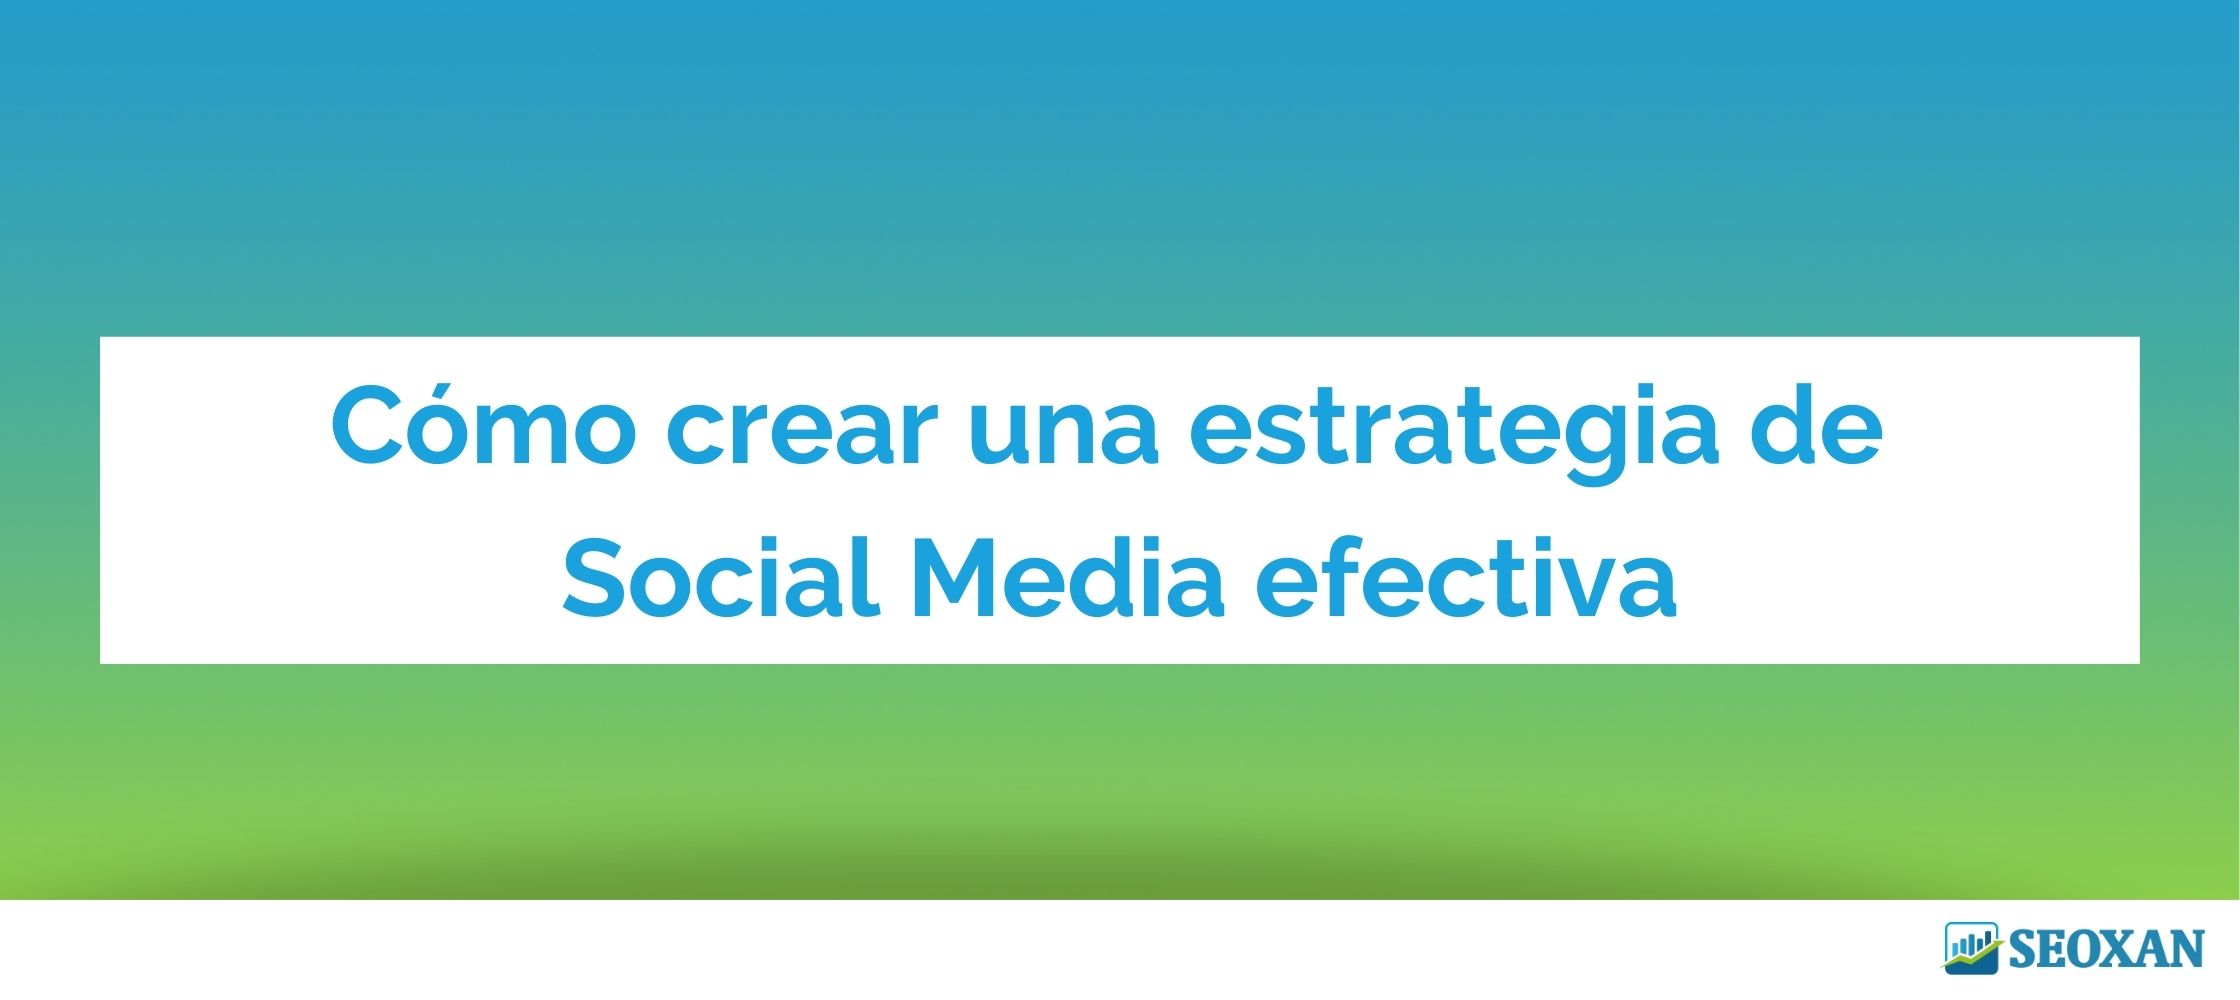 Cómo crear una estrategia de Social Media efectiva ?✅